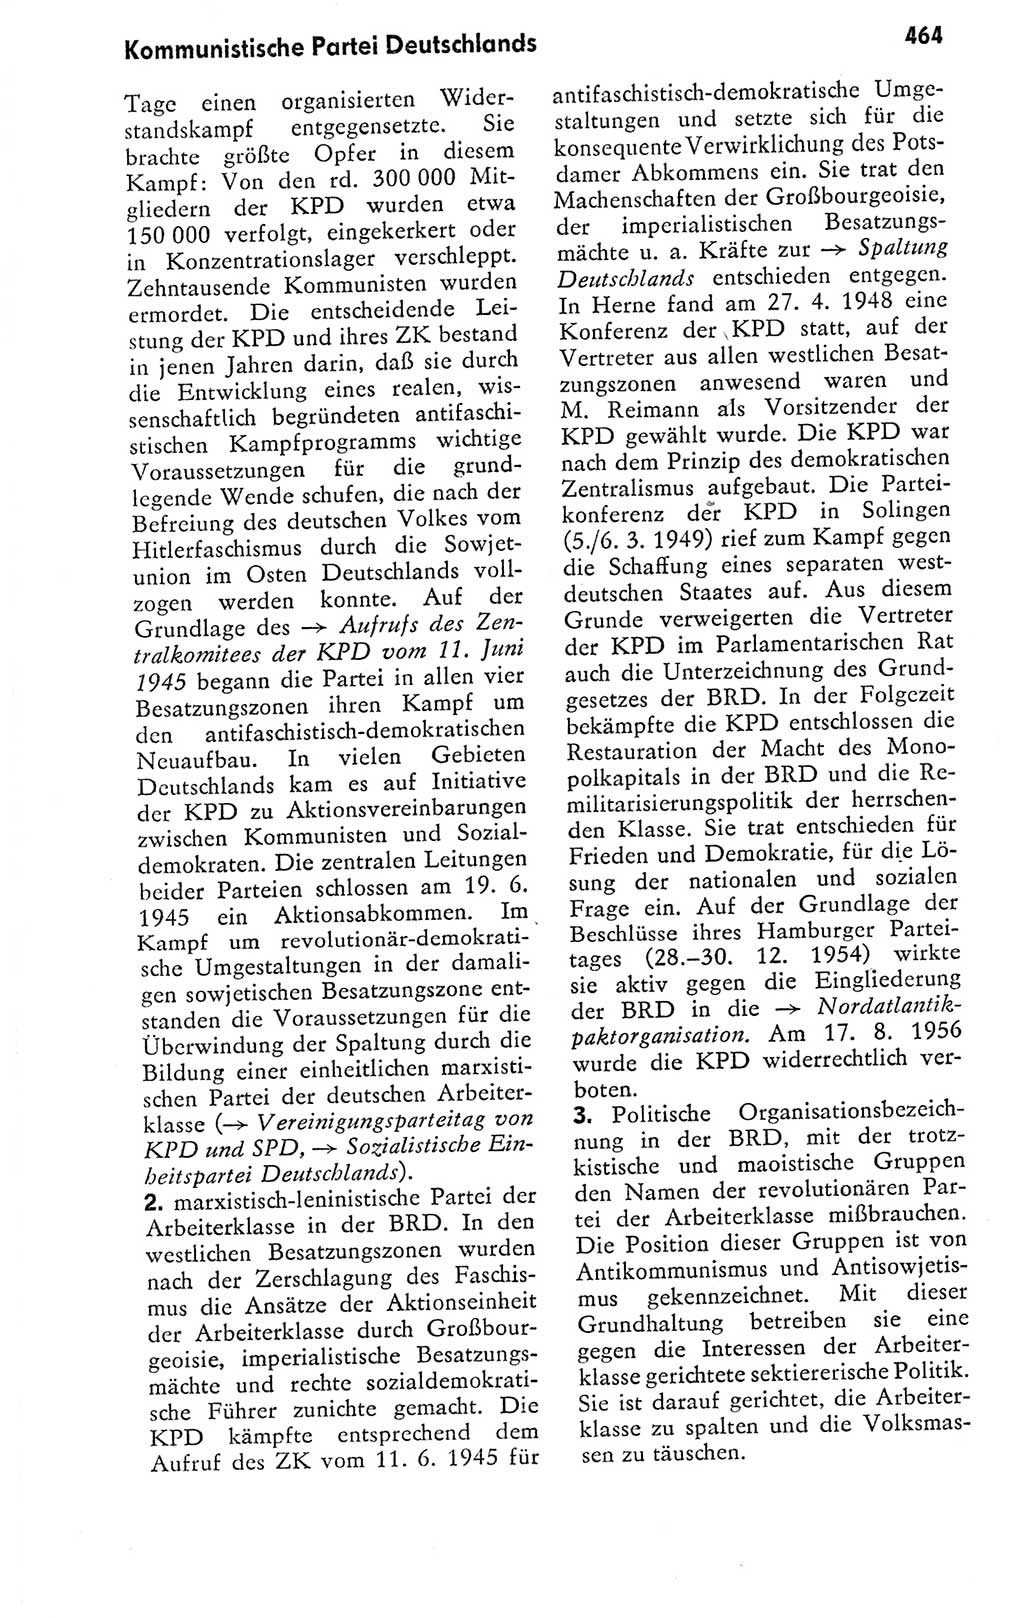 Kleines politisches Wörterbuch [Deutsche Demokratische Republik (DDR)] 1978, Seite 464 (Kl. pol. Wb. DDR 1978, S. 464)